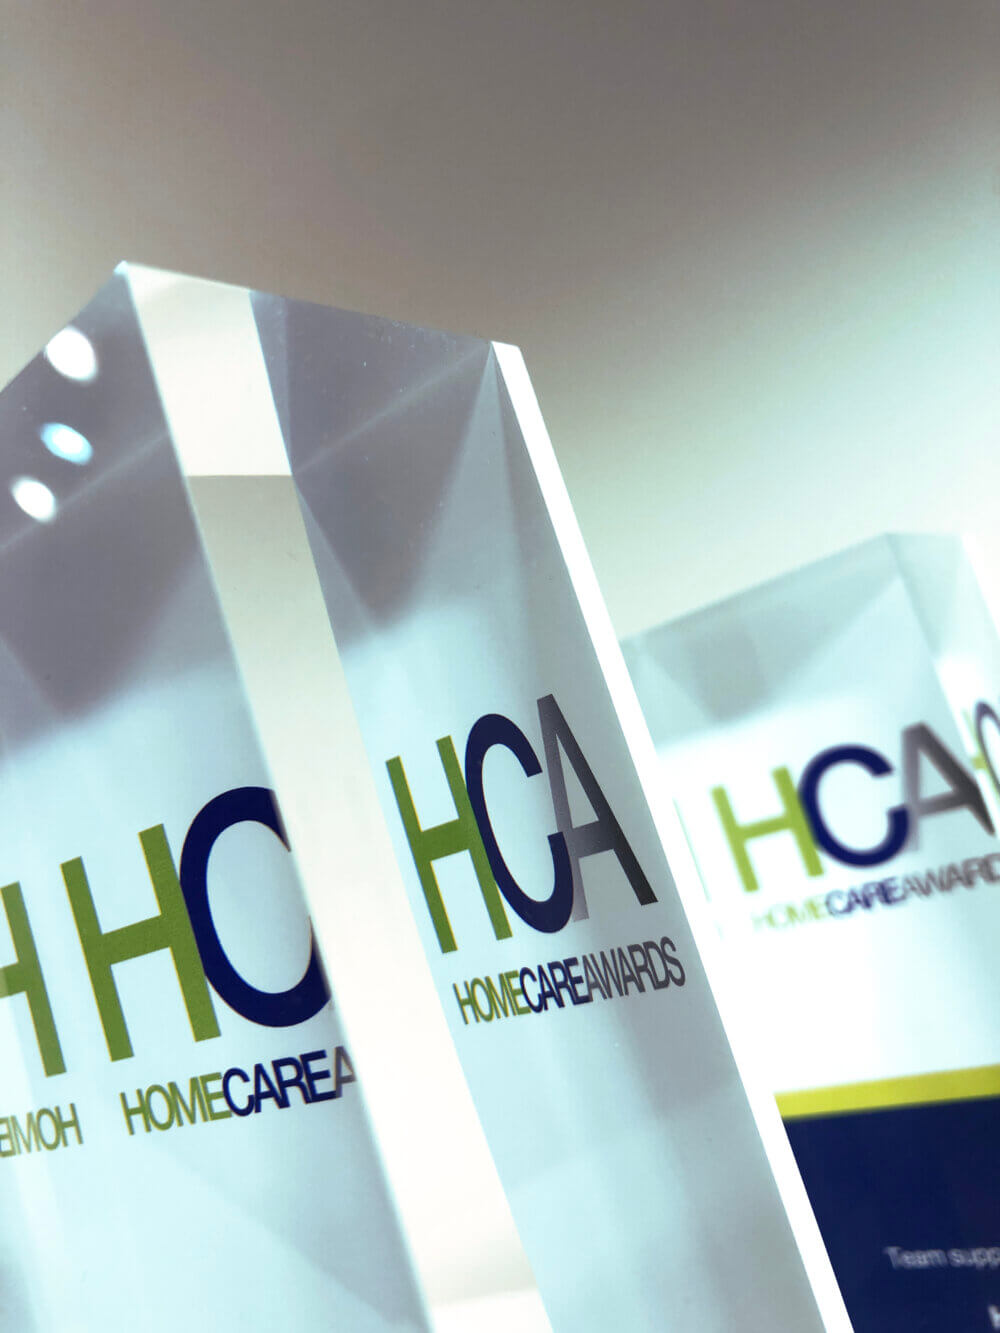 Homecare awards 2022